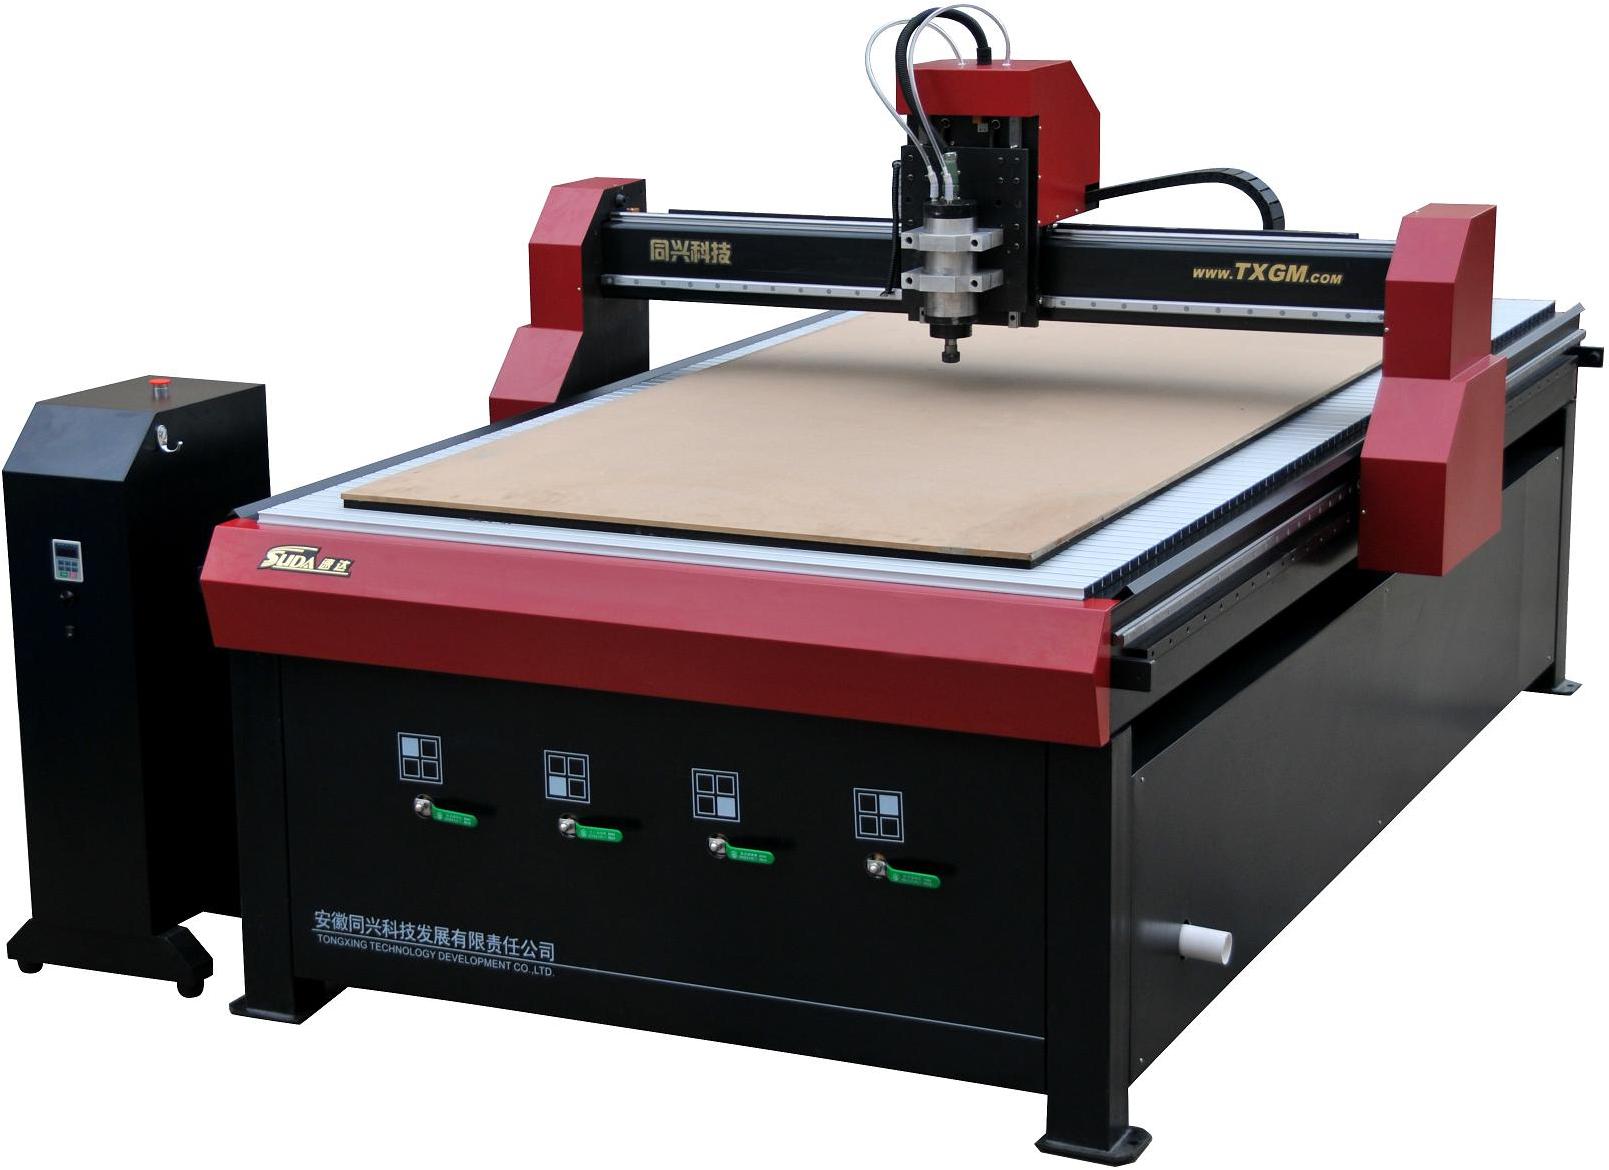 Suda Engraving Machine Manufacturer inDindigul Tamil Nadu 